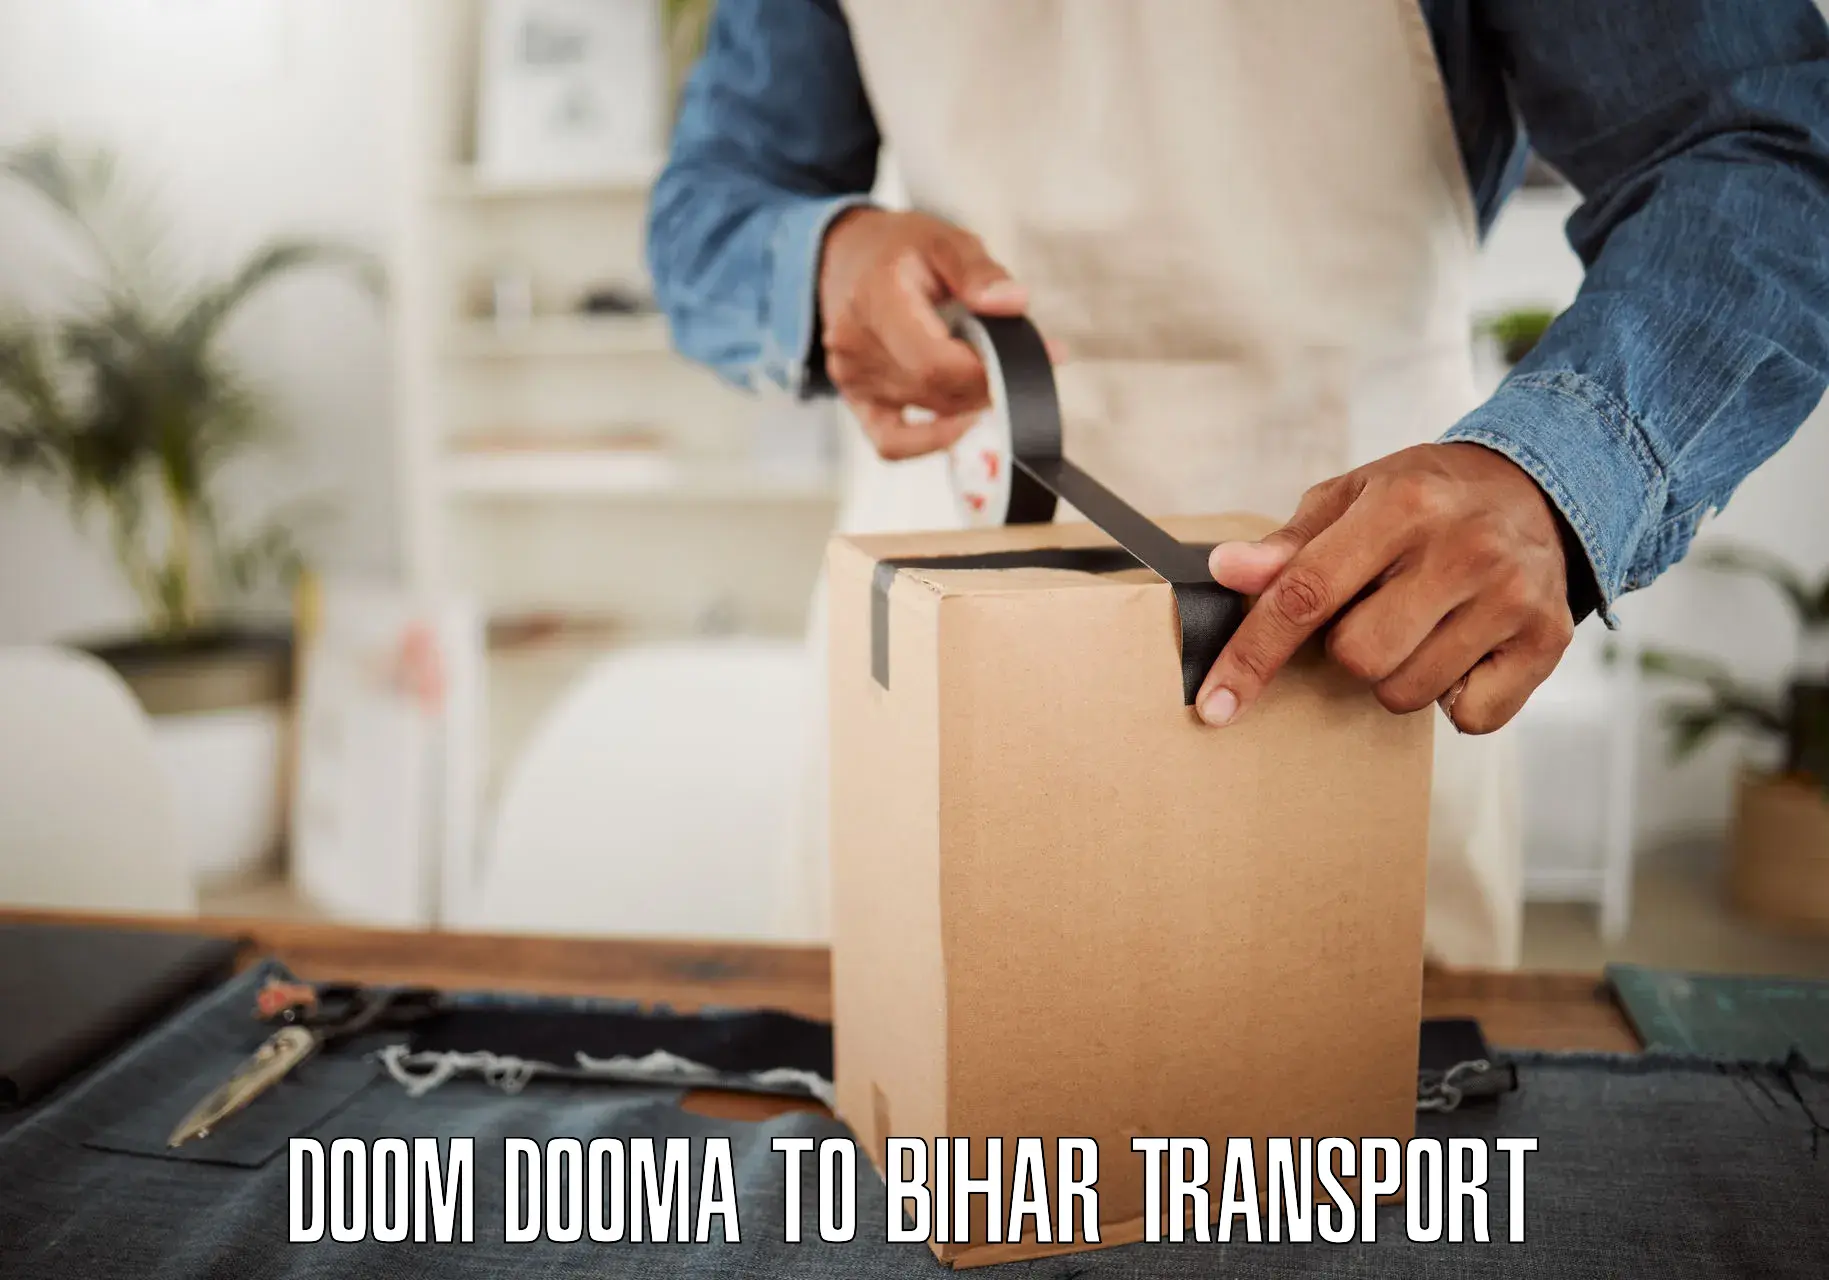 Furniture transport service Doom Dooma to Barh